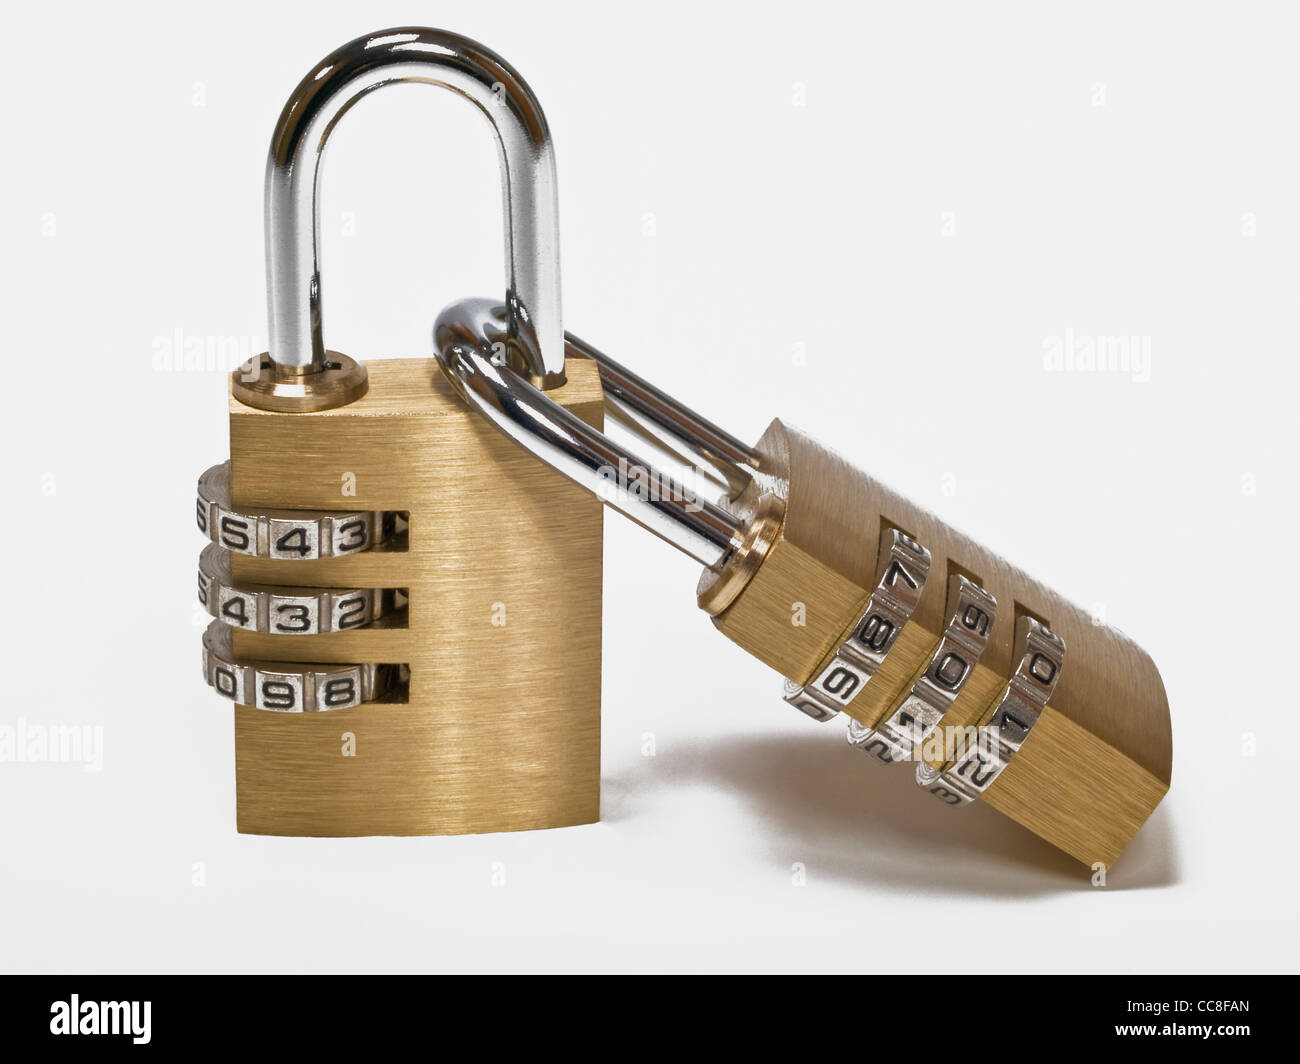 zwei Zahlenschlösser, gegenseitig verschlossen | two combination locks, closed together Stock Photo